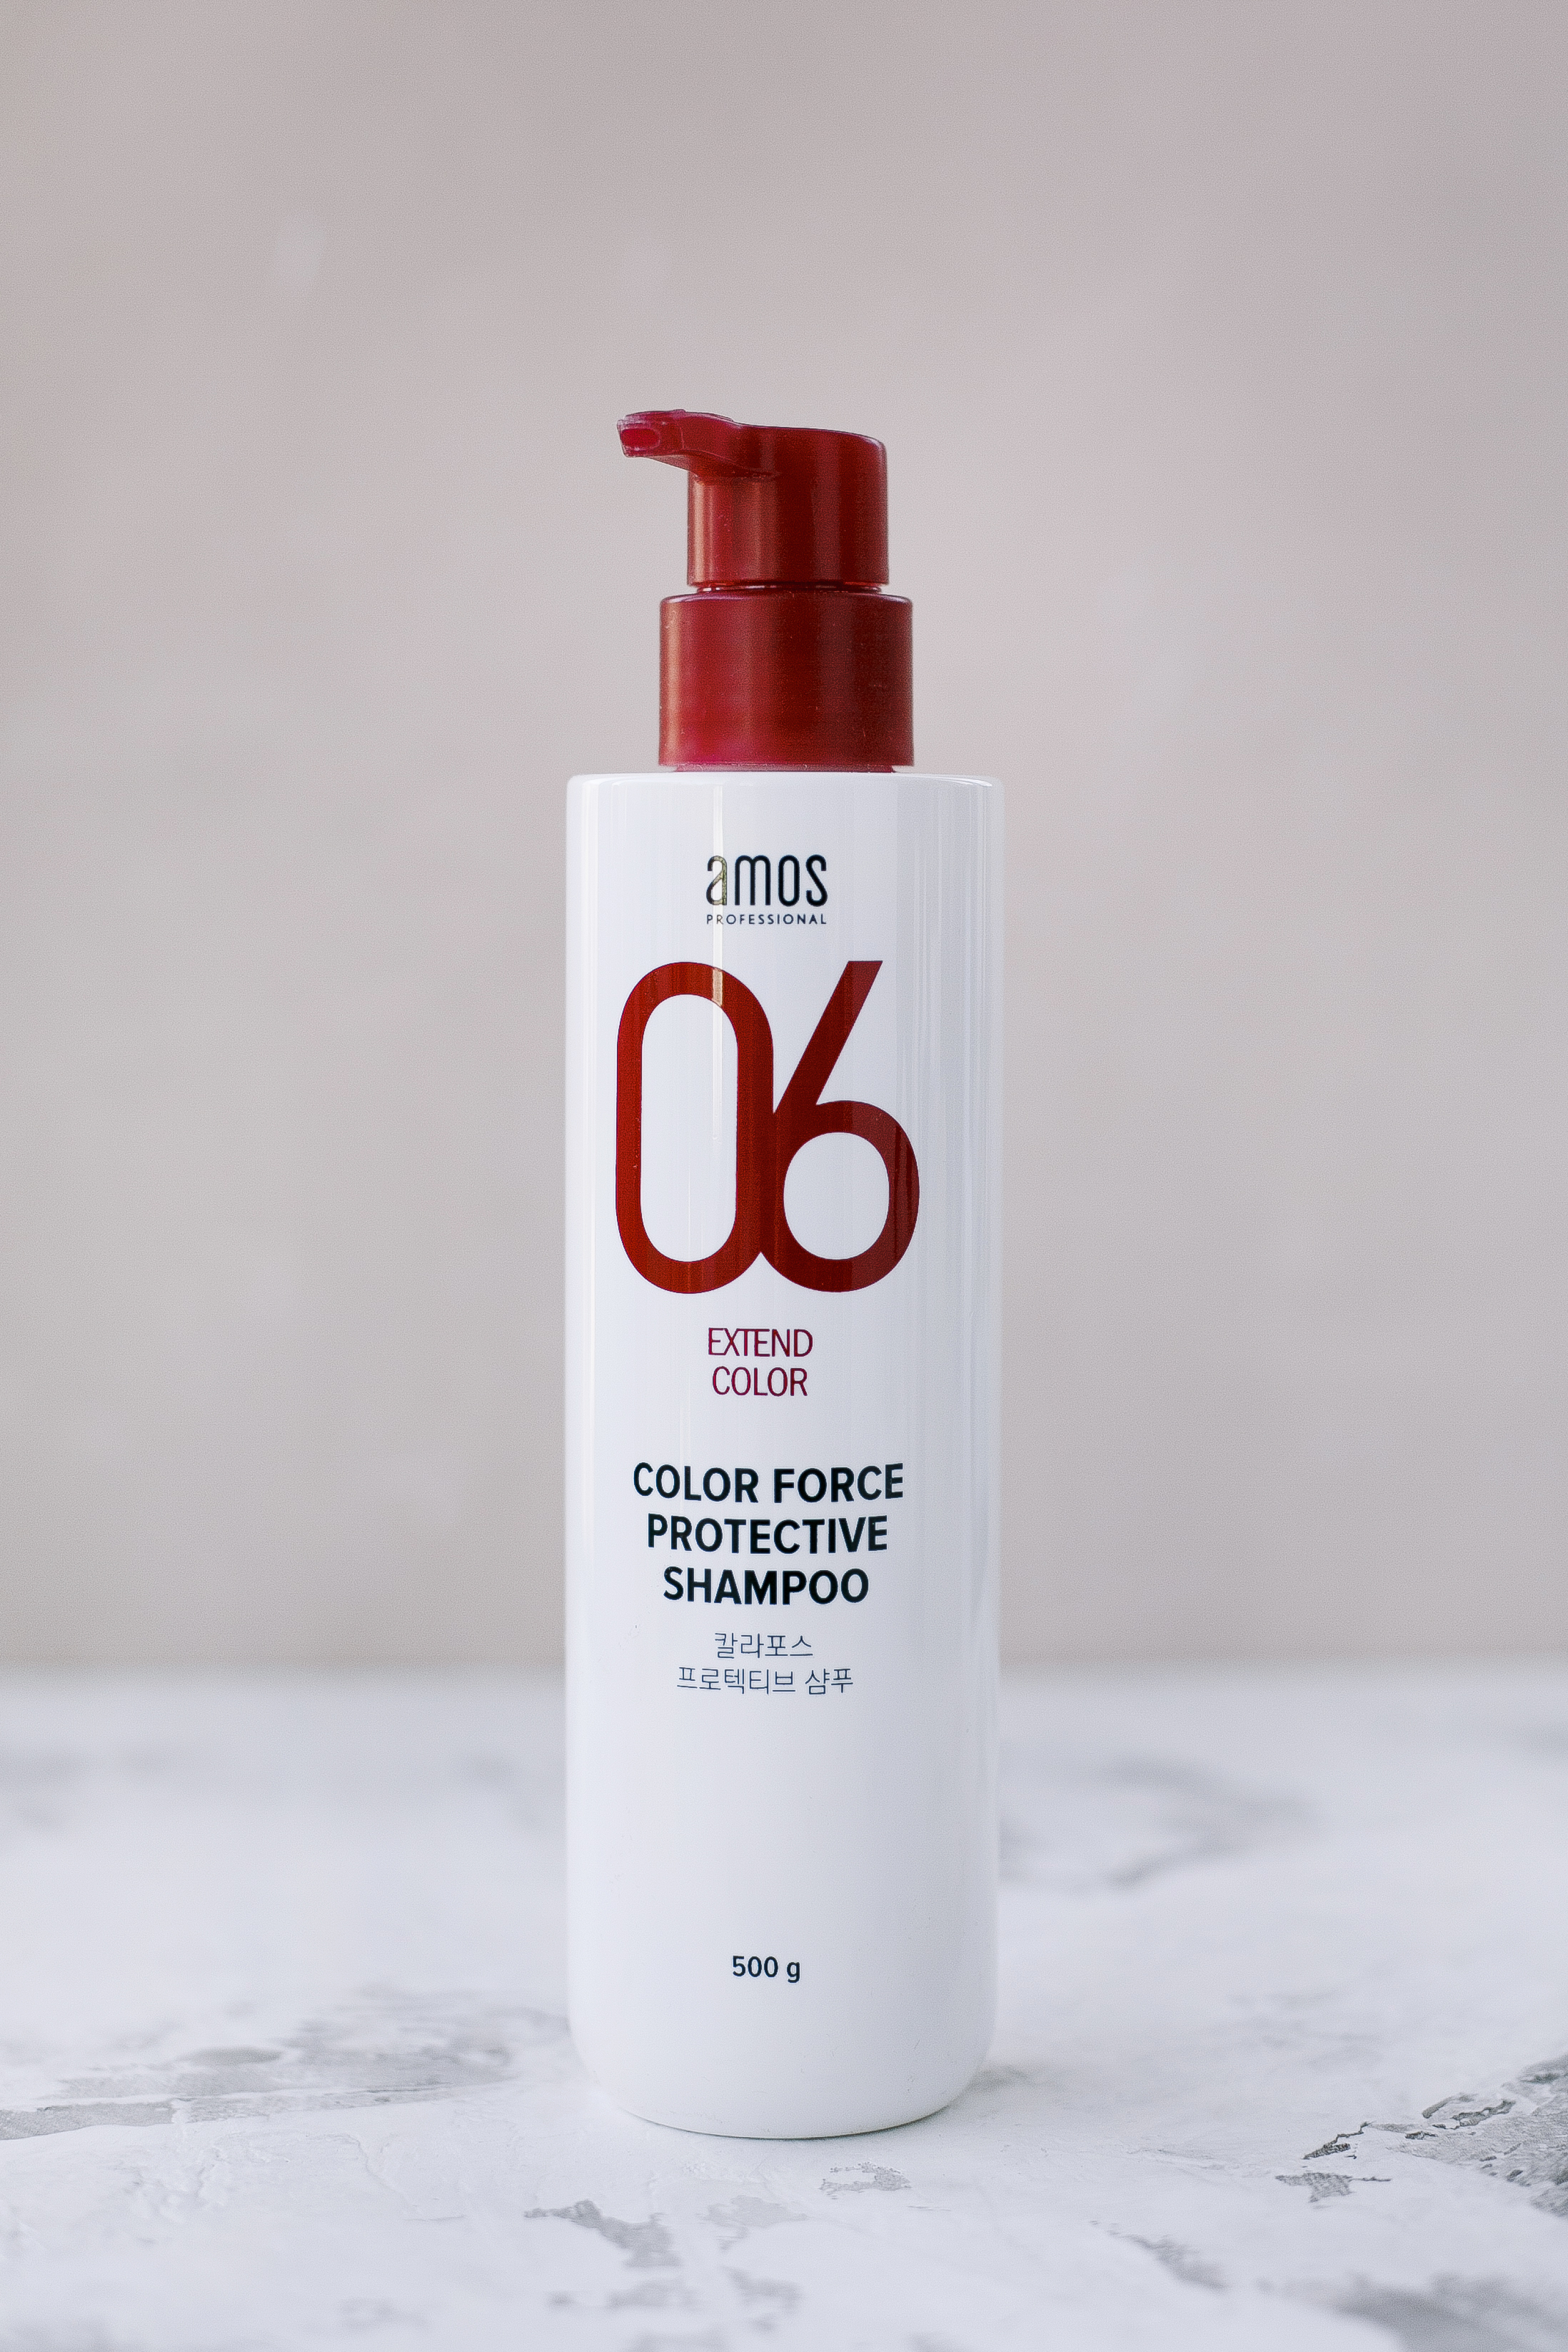 BU// Шампунь для окрашенных волос AMOS Color Force Protective Shampoo 500g - фото 1